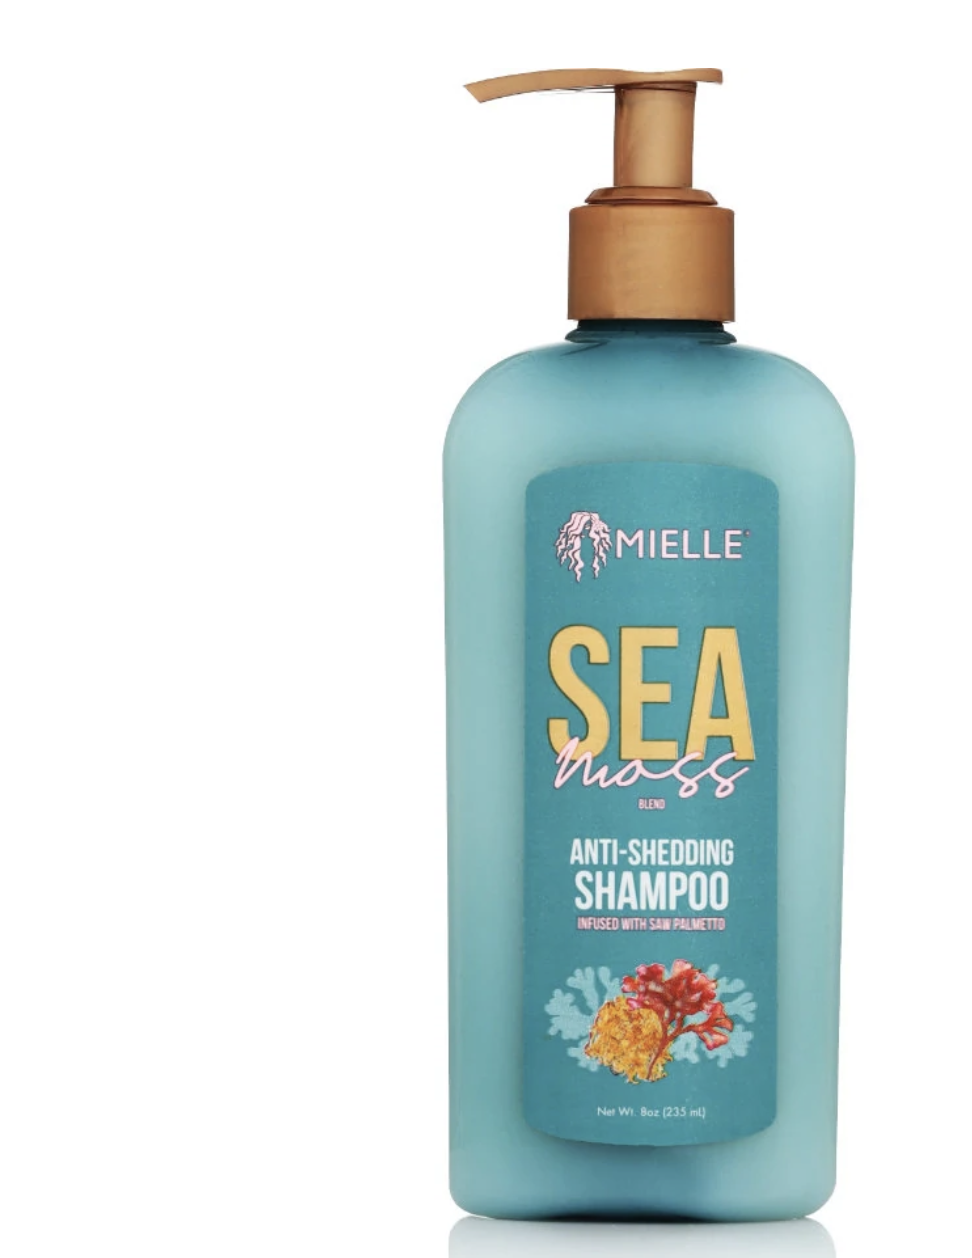 Mielle Sea Moss Anti Shedding Shampoo 8 oz - BPolished Beauty Supply